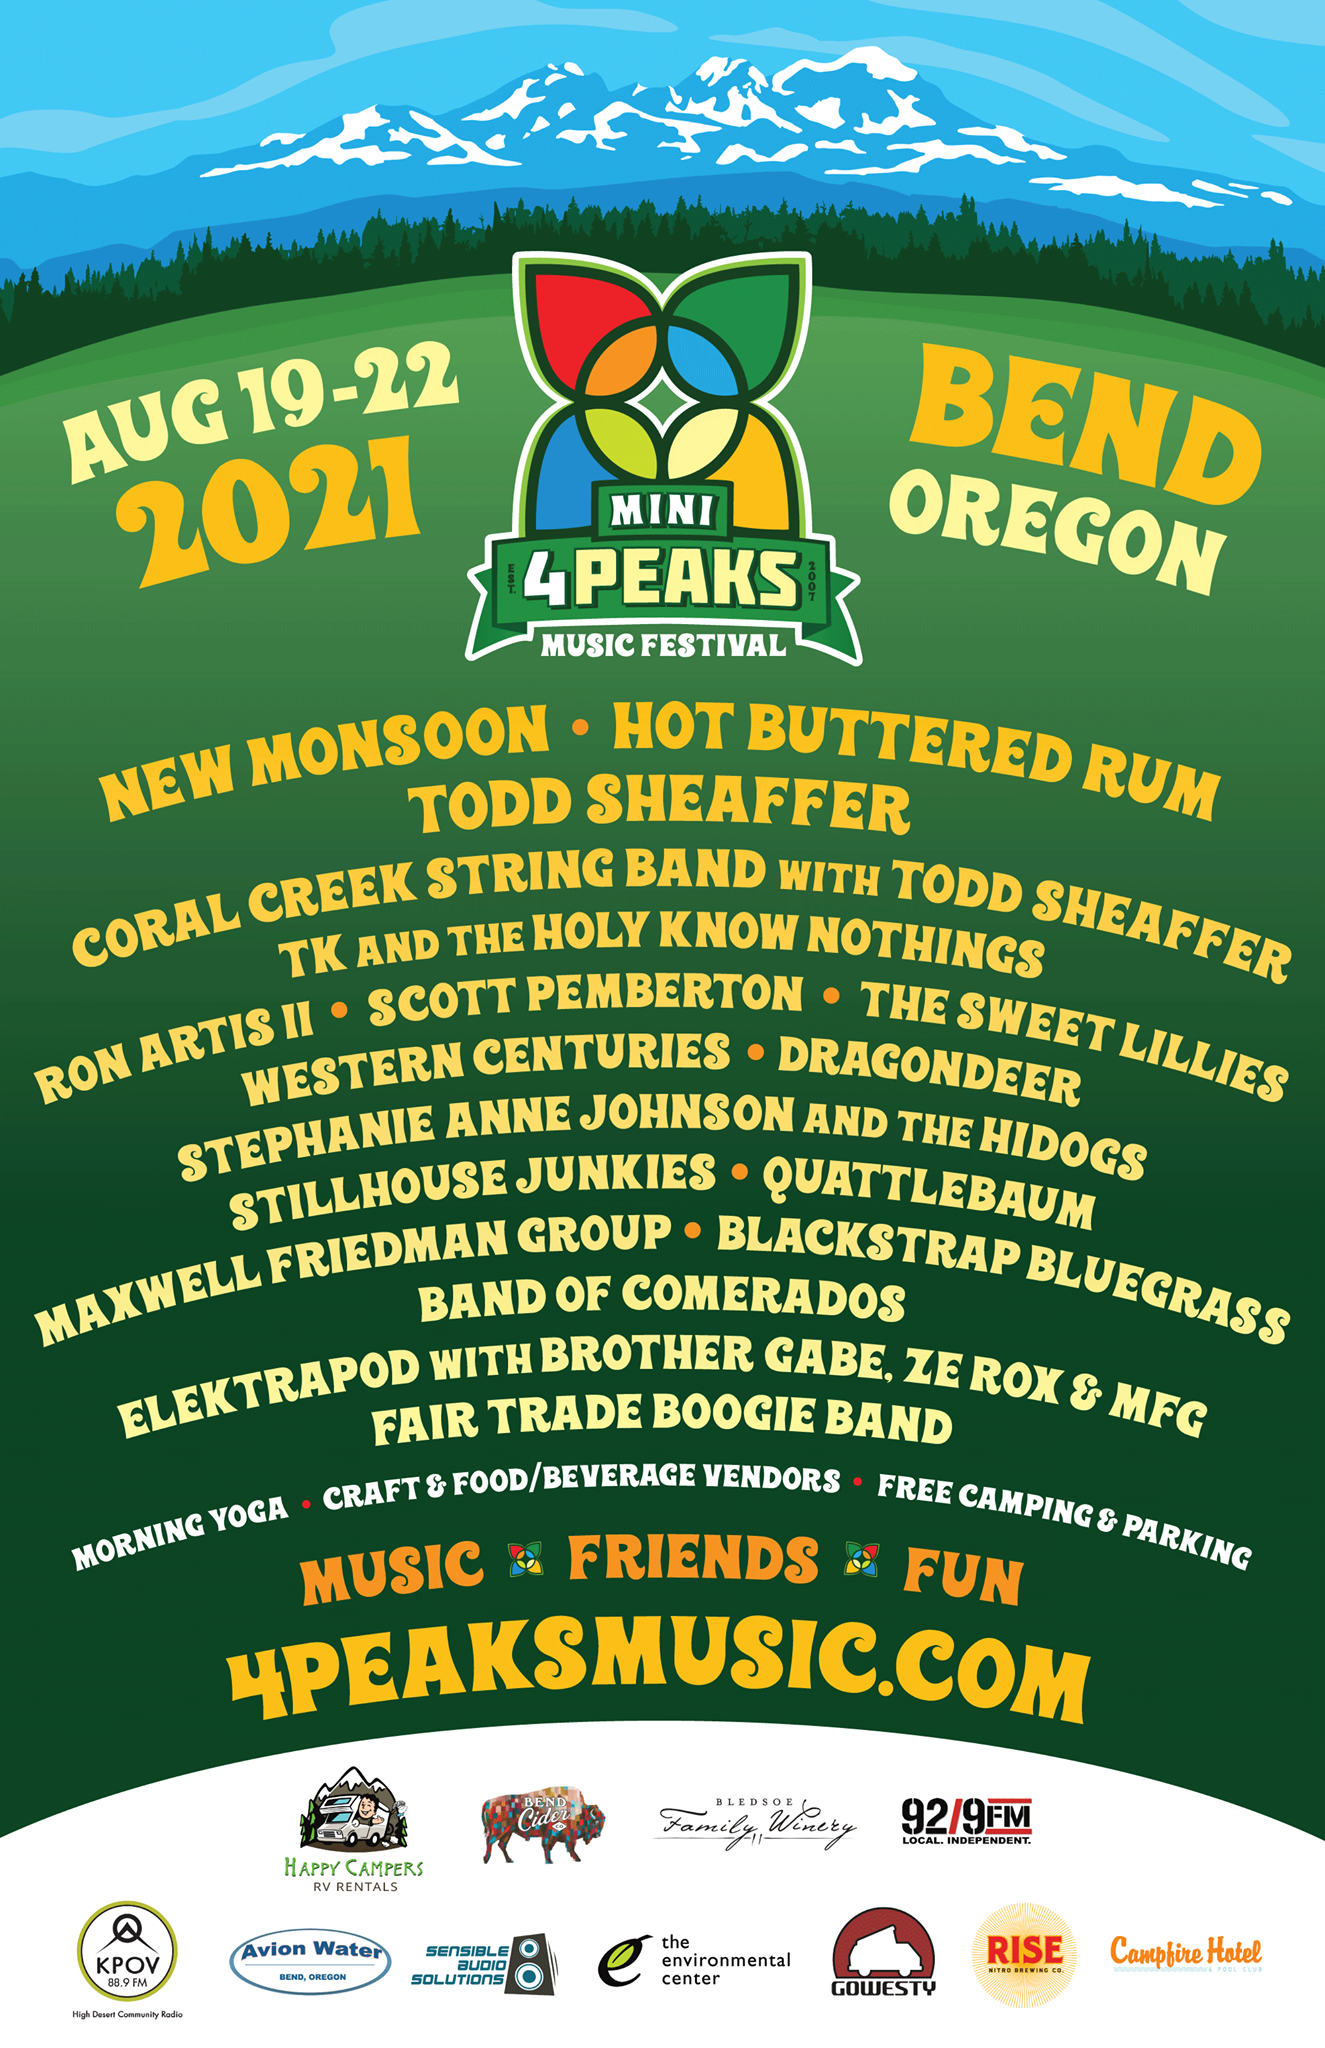 4peaks music festival lineup